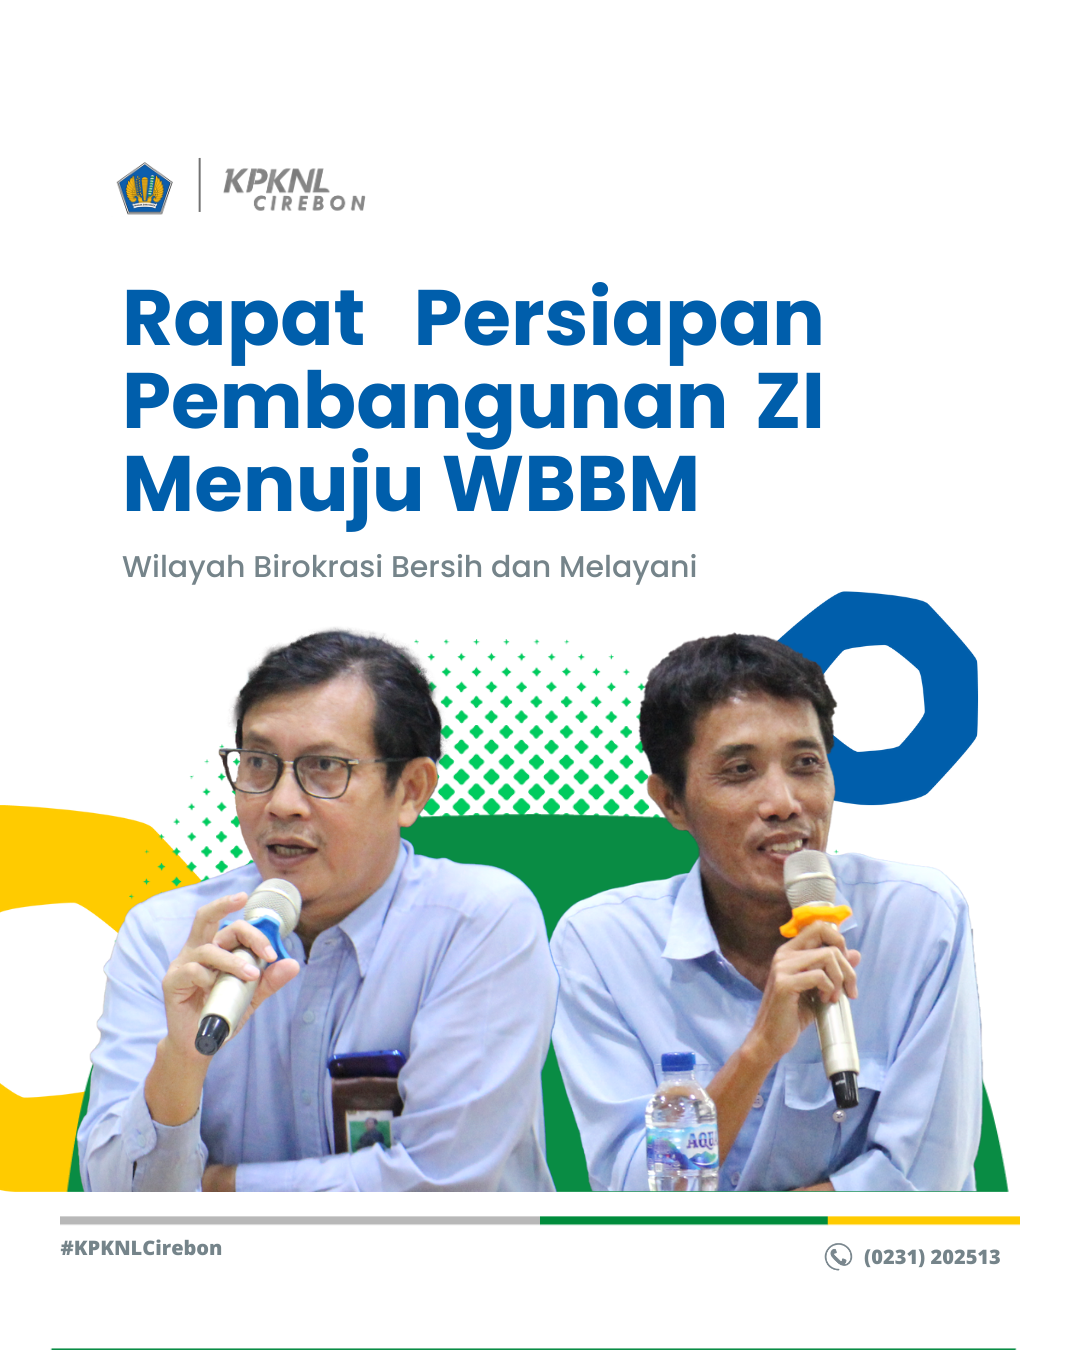 Rapat Persiapan Pembangunan ZI Menuju WBBM KPKNL Cirebon